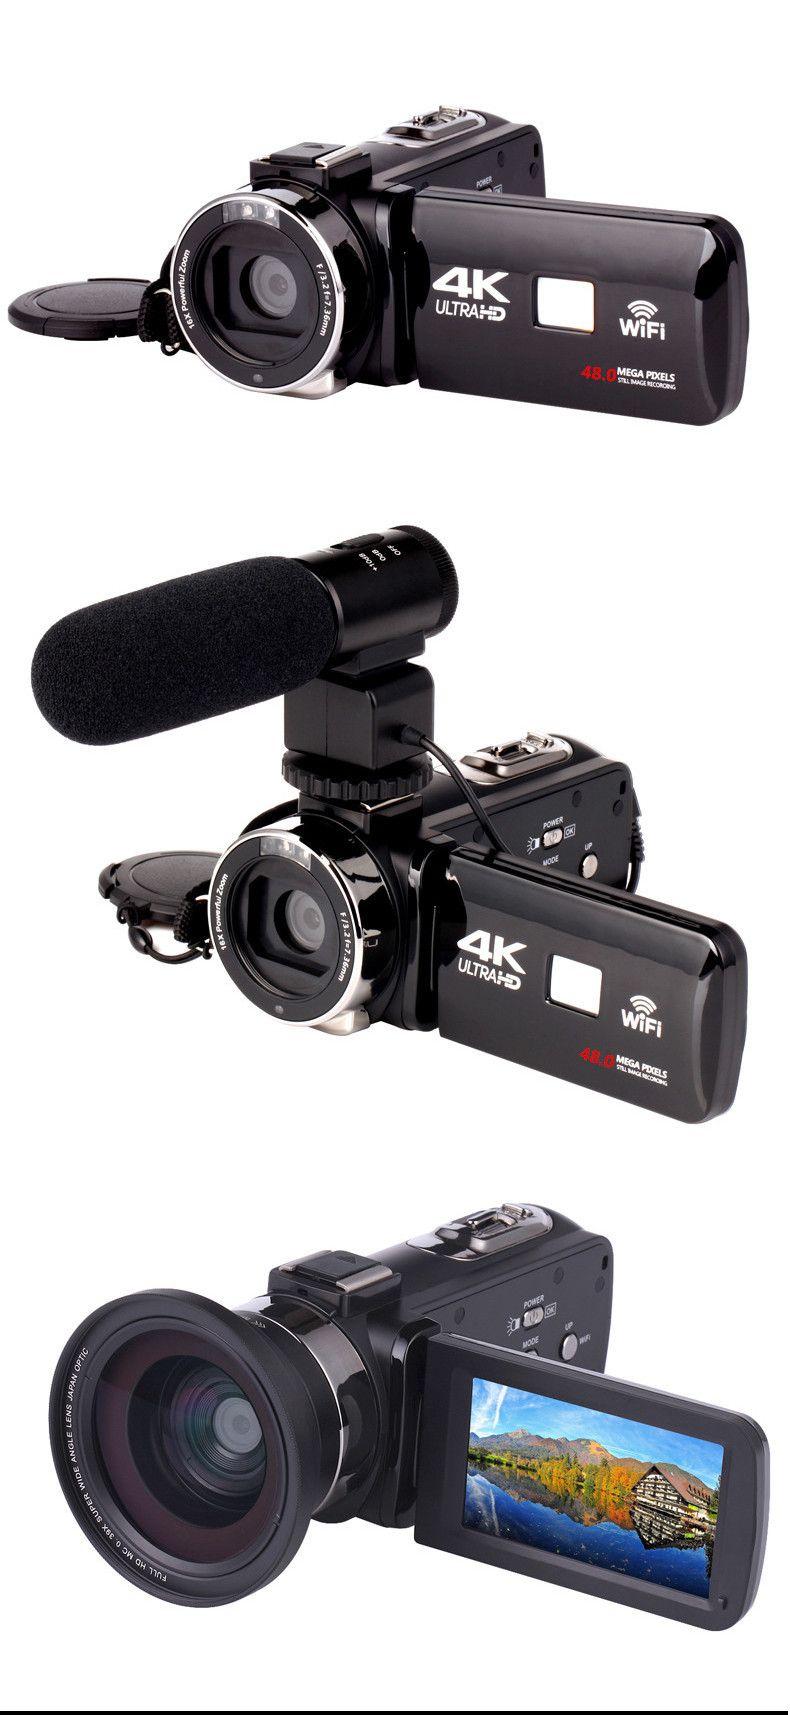 KOMERY-AF2-48M-4K-Video-Camera-Camcorder-for-Vlogging-Live-Broadcast-NightShot-30-inch-Touch-Screen--1757069